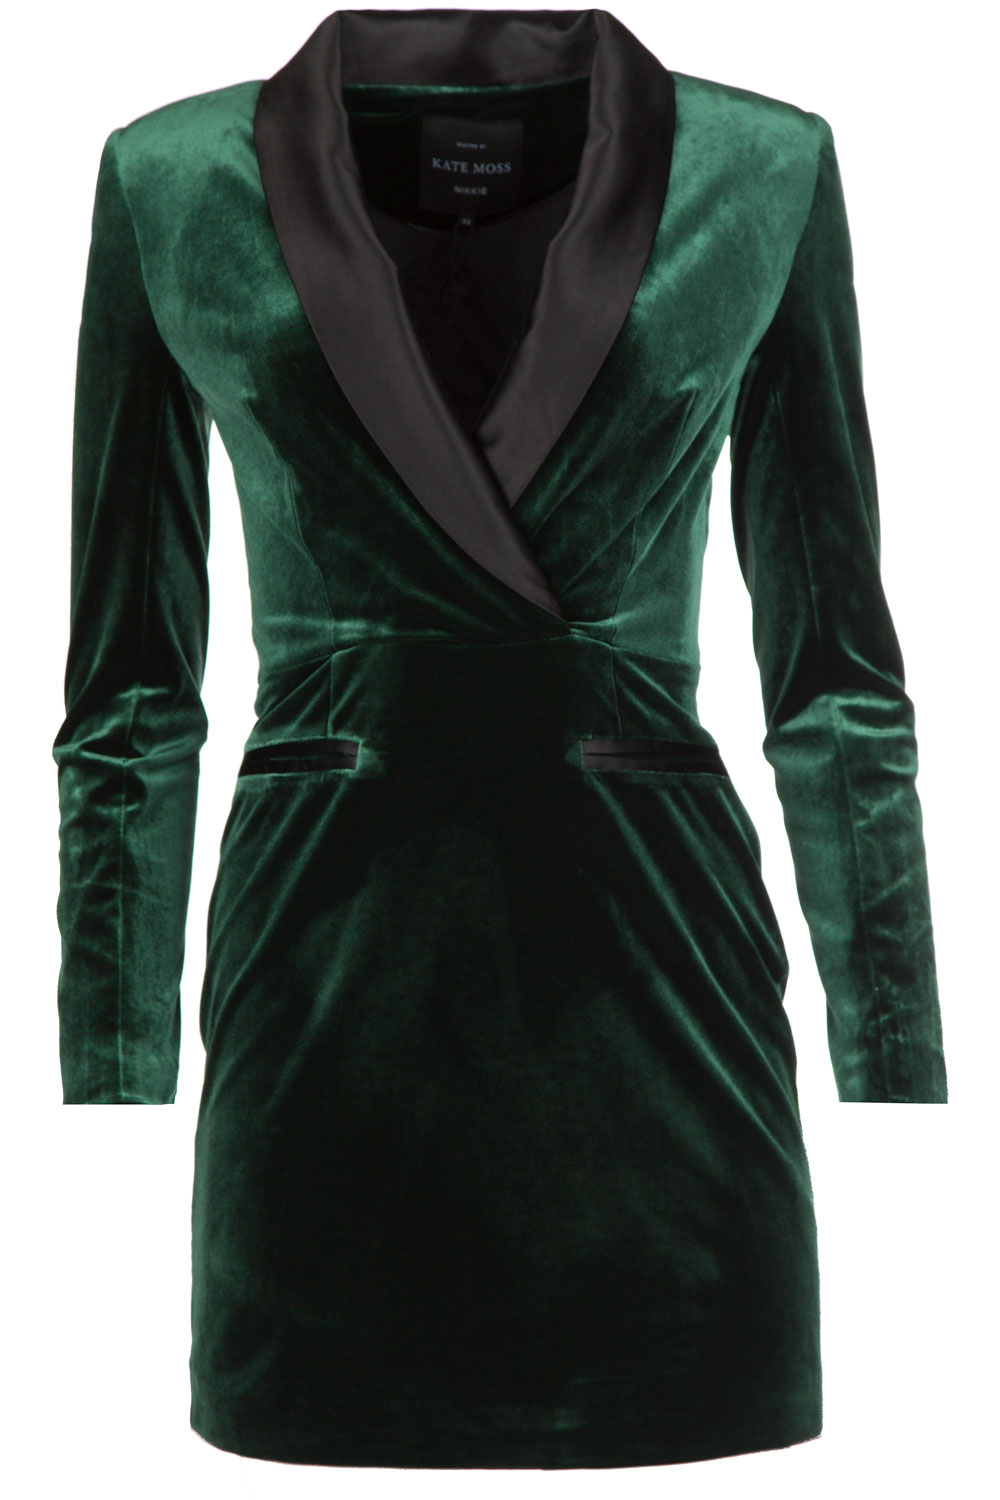 Velvet blazer dress Lola | dark green ...